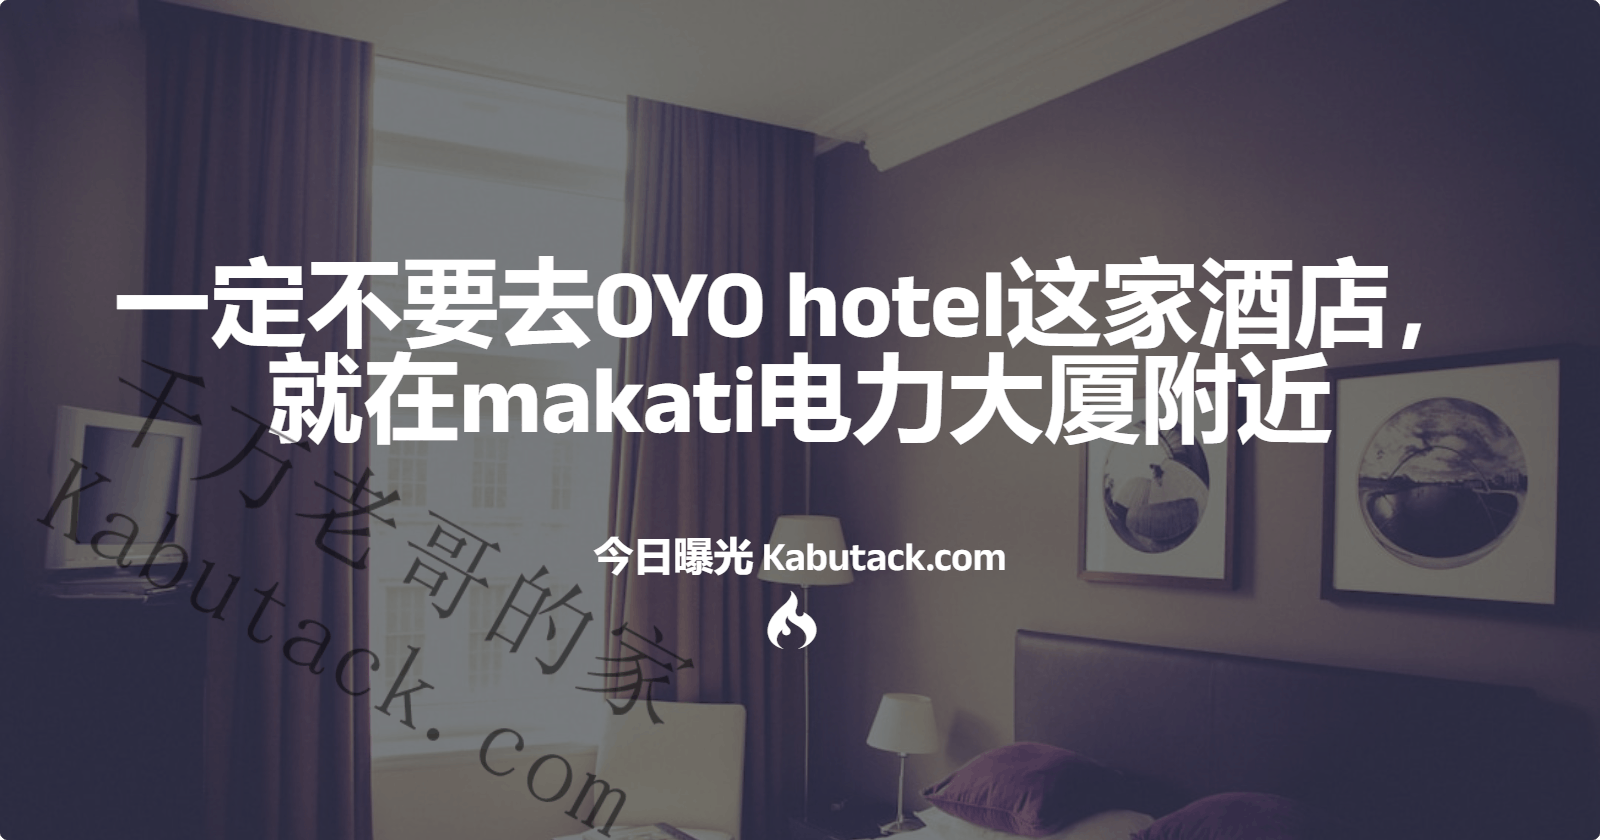 一定不要去OYO hotel这家酒店，就在makati电力大厦附近